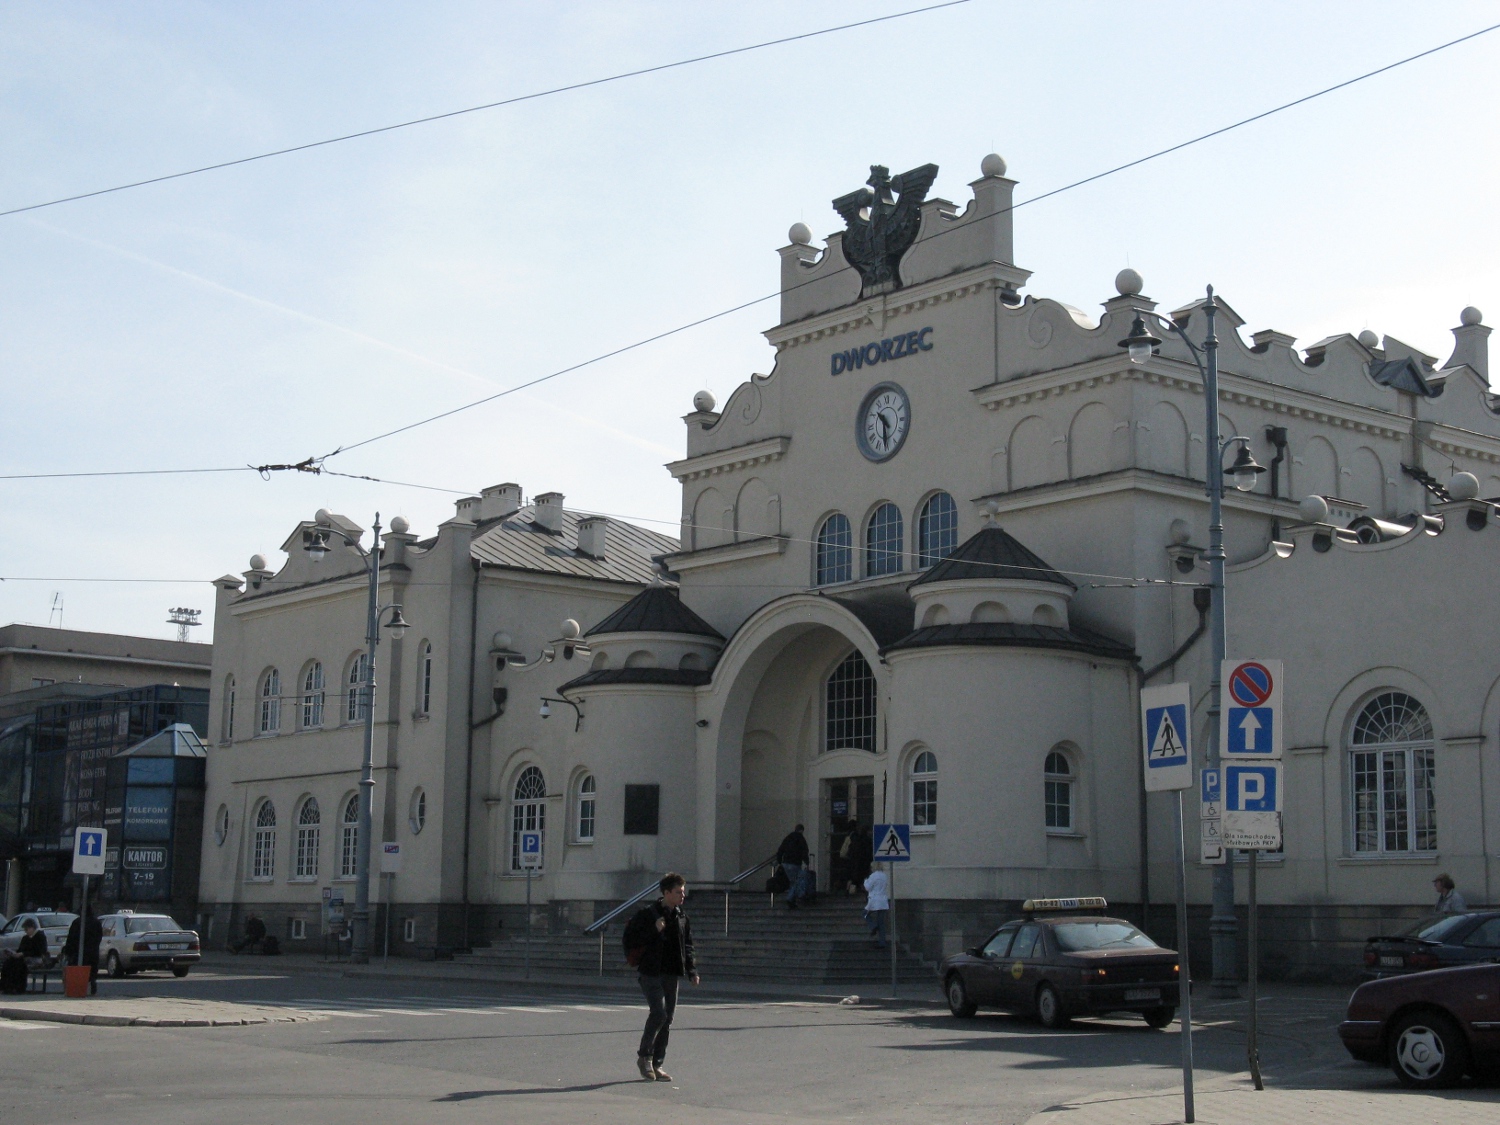 Dworzec kolejowy w Lublinie